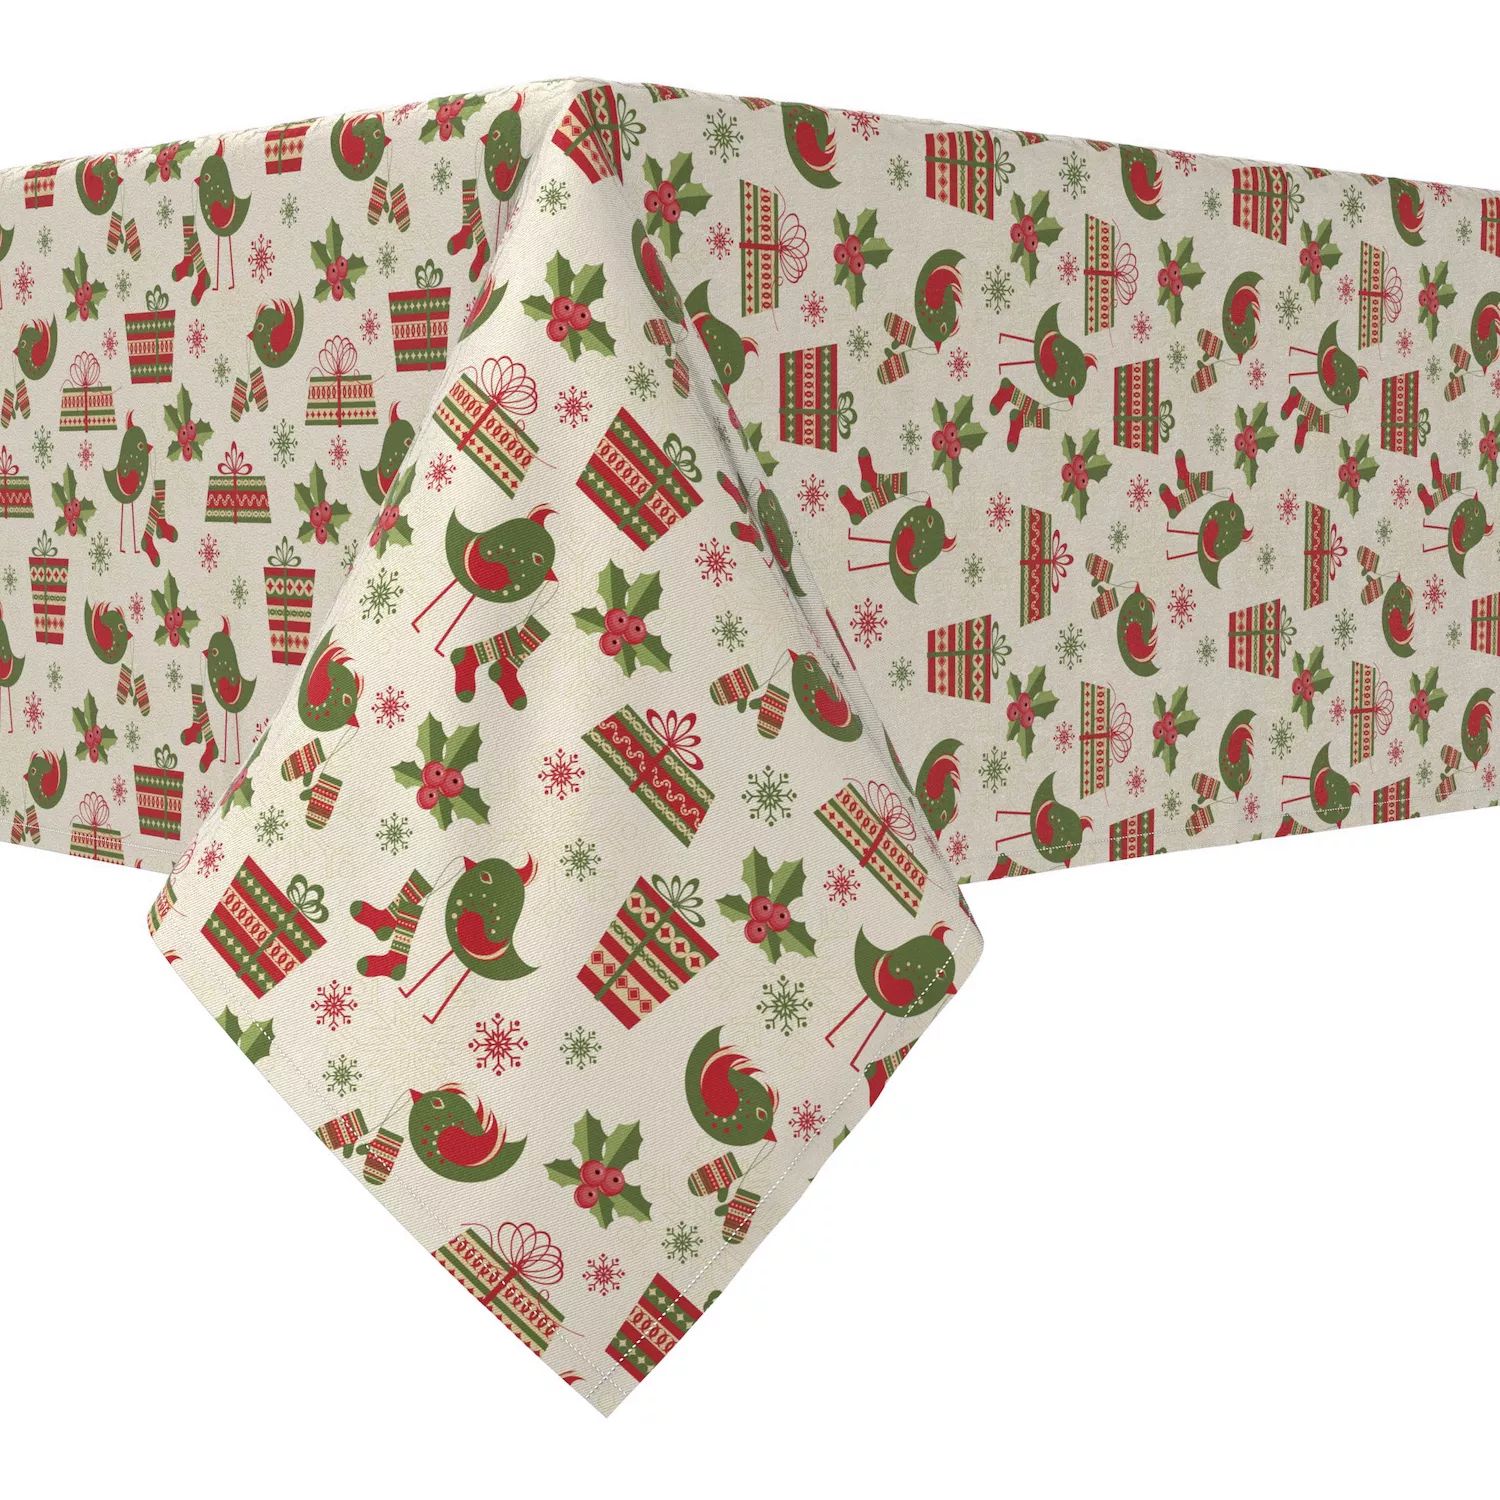 Прямоугольная скатерть, 100% хлопок, 52x120 дюймов, Рождество. прямоугольная скатерть 100 % хлопок 52x120 дюймов в стиле подсолнух